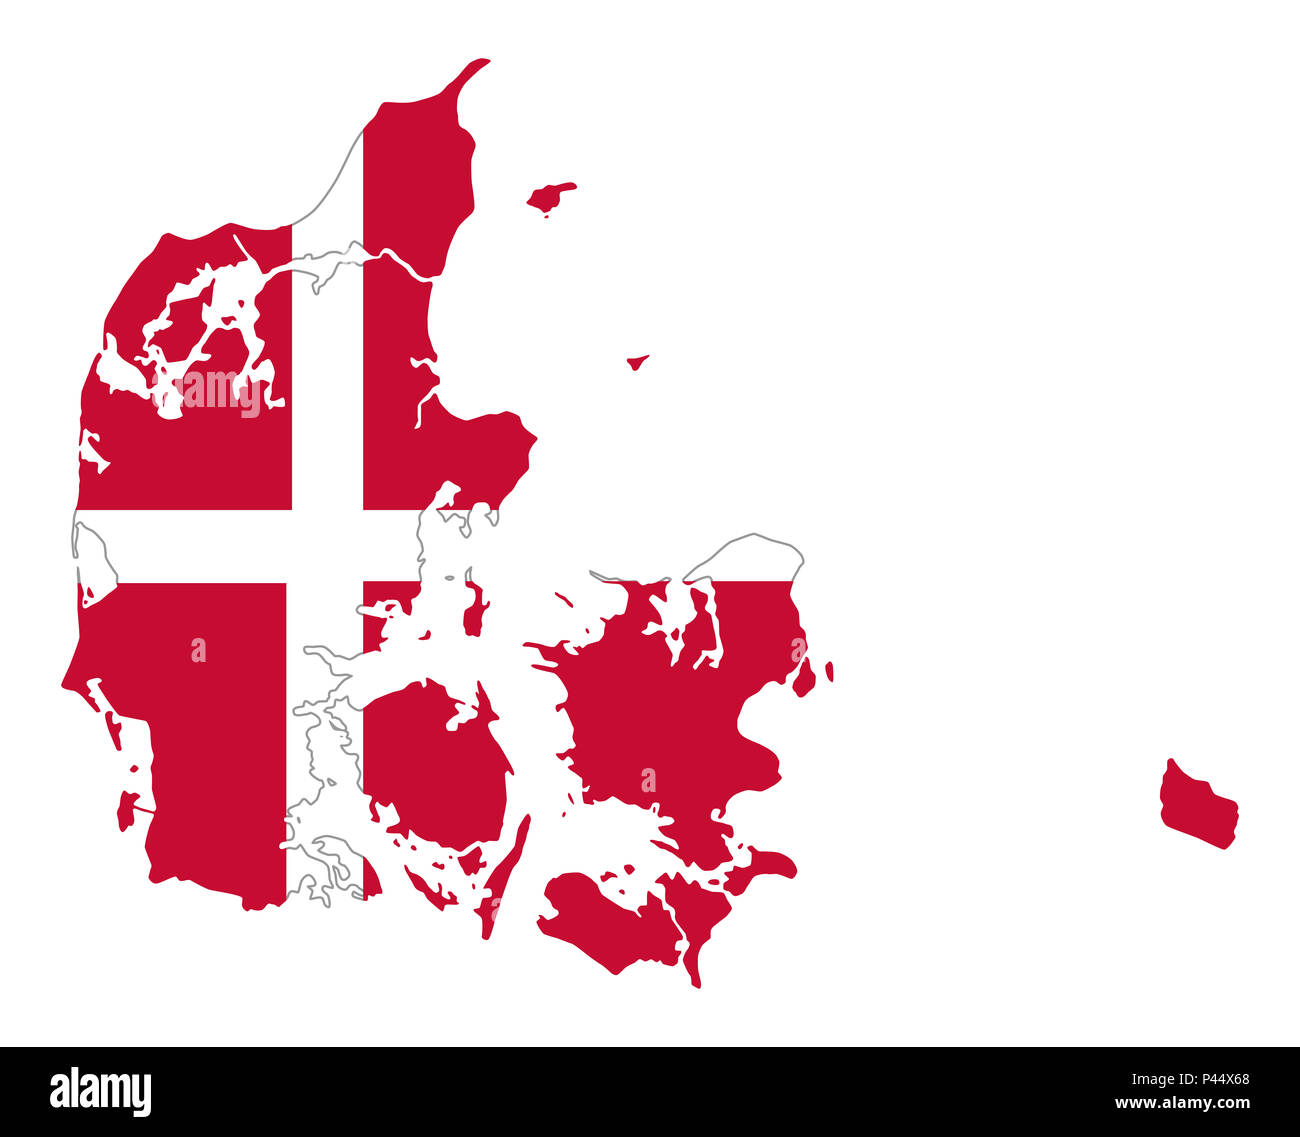 Flagge von Dänemark im Land Silhouette. Der dänische Staat Stern, ein  weißes Skandinavisches Kreuz auf rotem Feld. Großbritannien und die  nordischen Länder in Europa Stockfotografie - Alamy